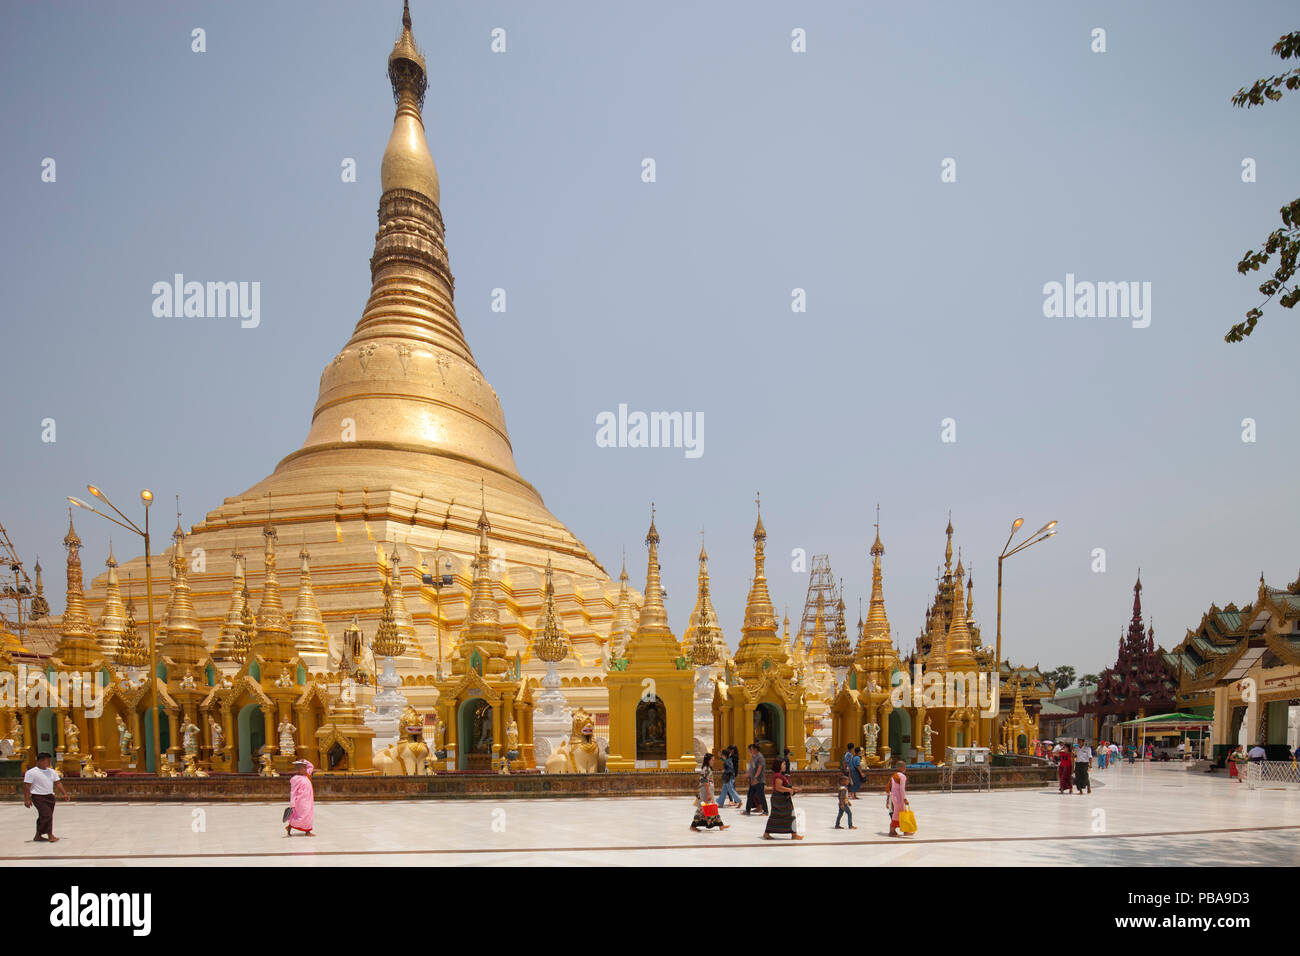 Shwedagon pagoda, Yangon, Myanmar, Asia Stock Photo